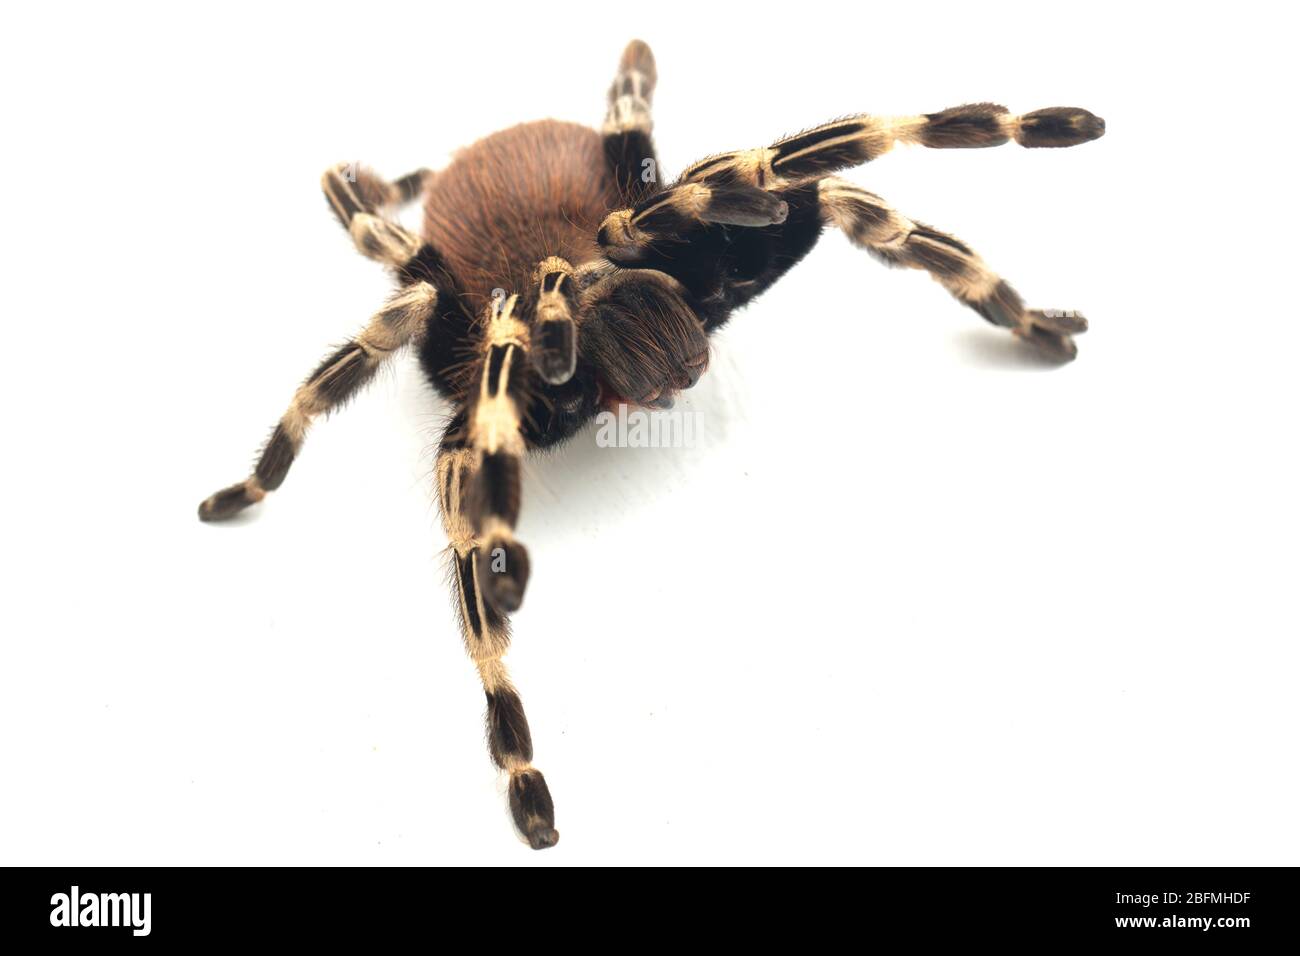 Le tarantula rouge et blanc brésilien (Nhandu chromatus) est une espèce de tarantula originaire du Brésil. Isolée sur fond blanc Banque D'Images